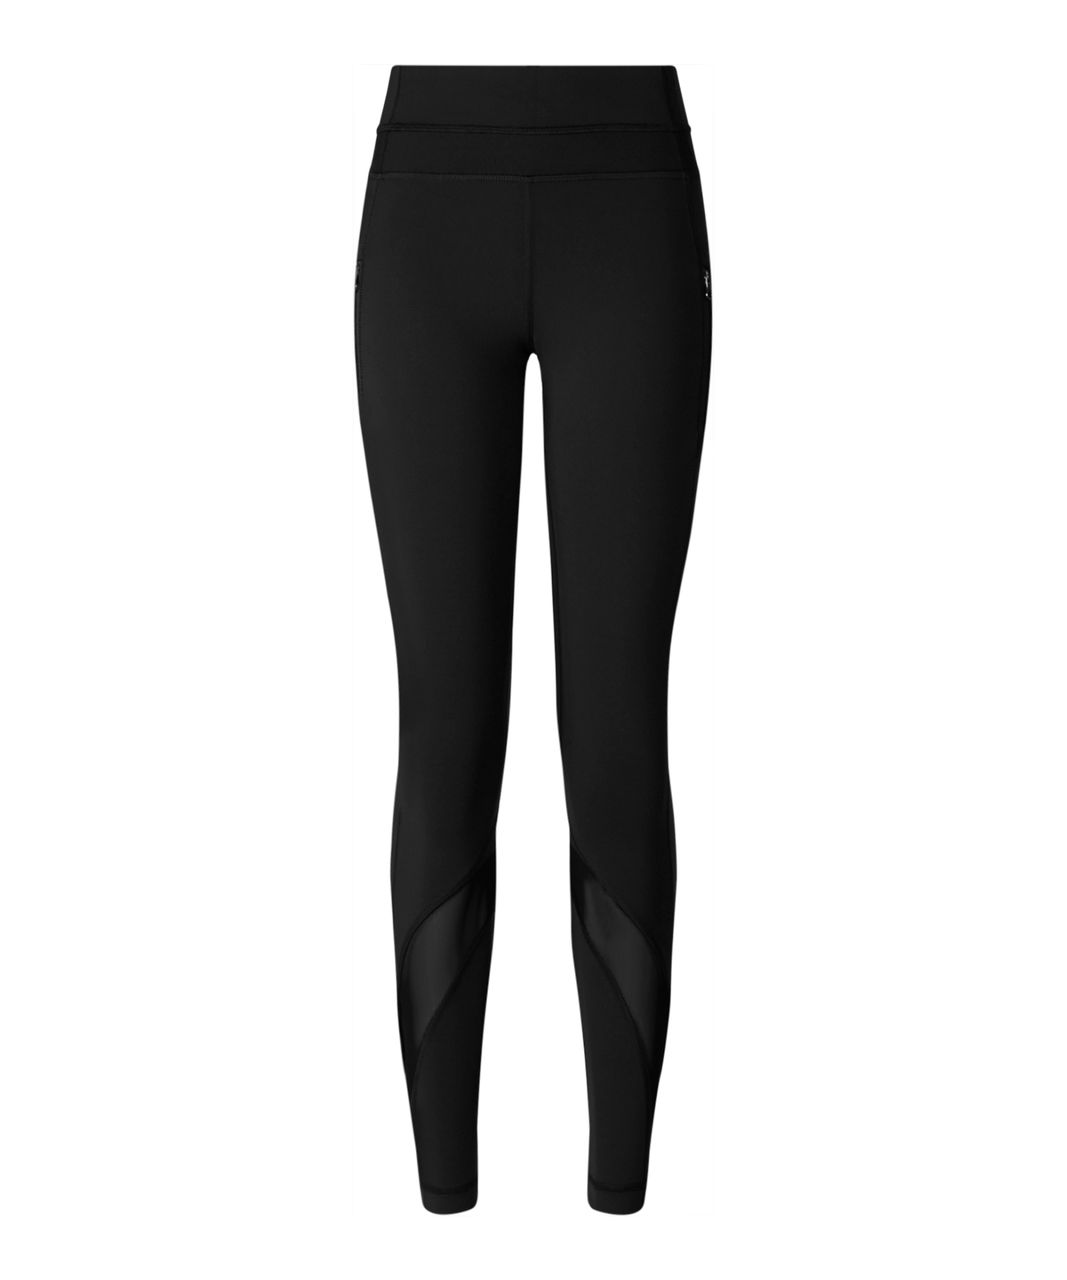 lululemon black leggings sale